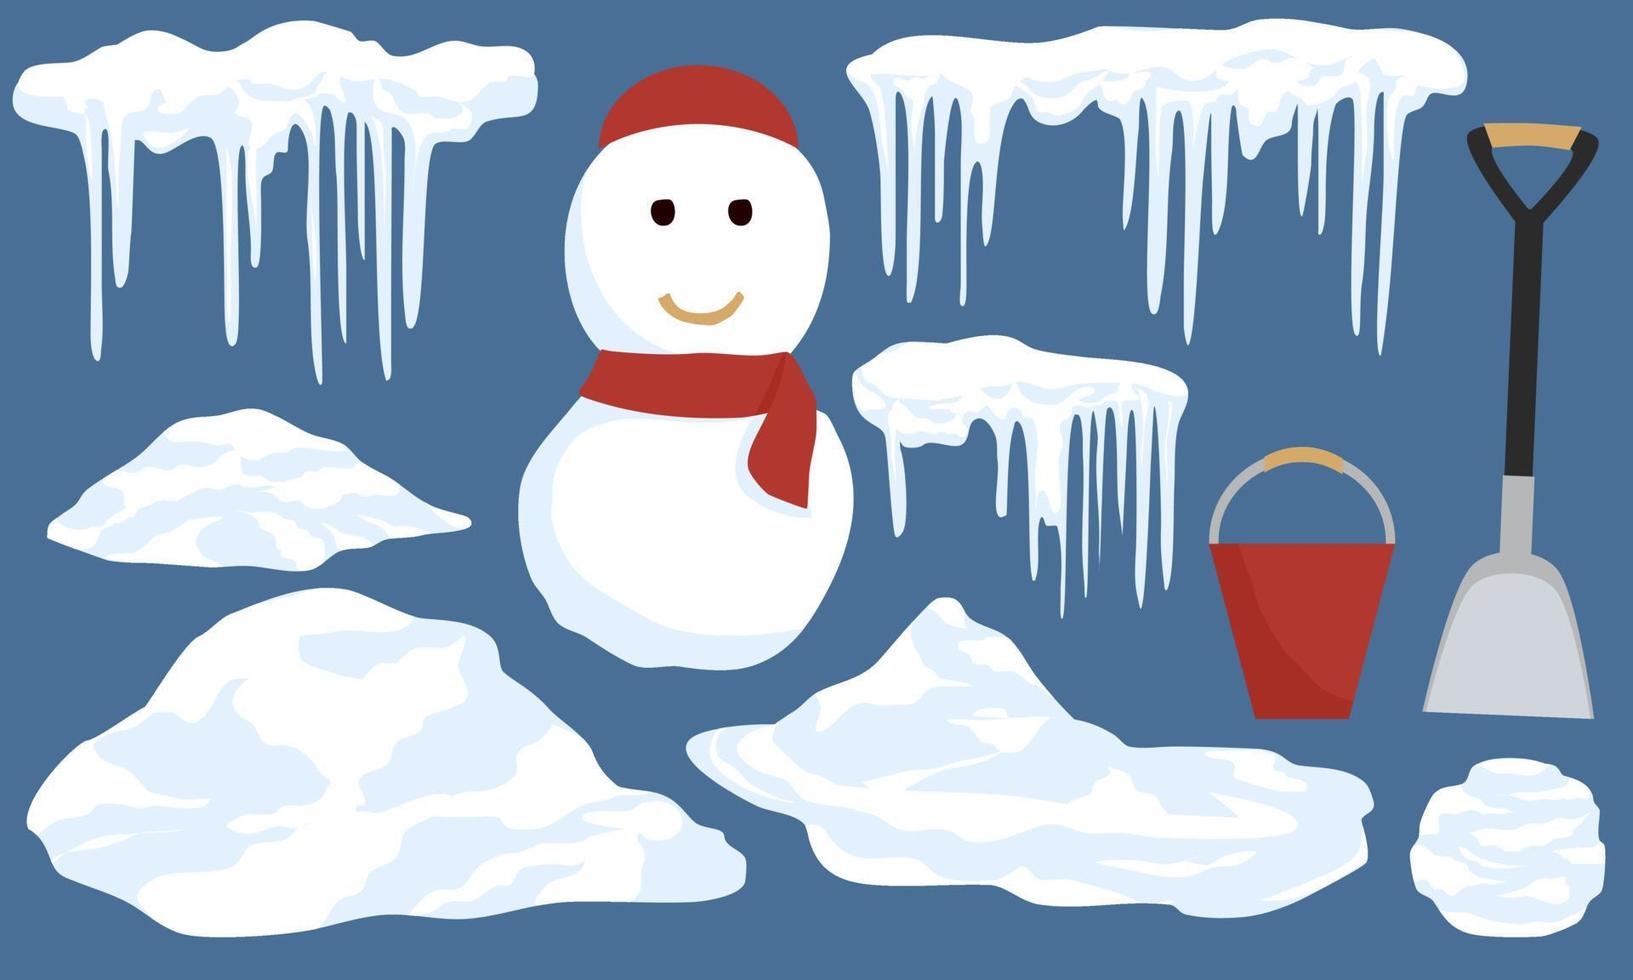 neve, pingentes, decoração de elemento de inverno de boneco de neve vetor